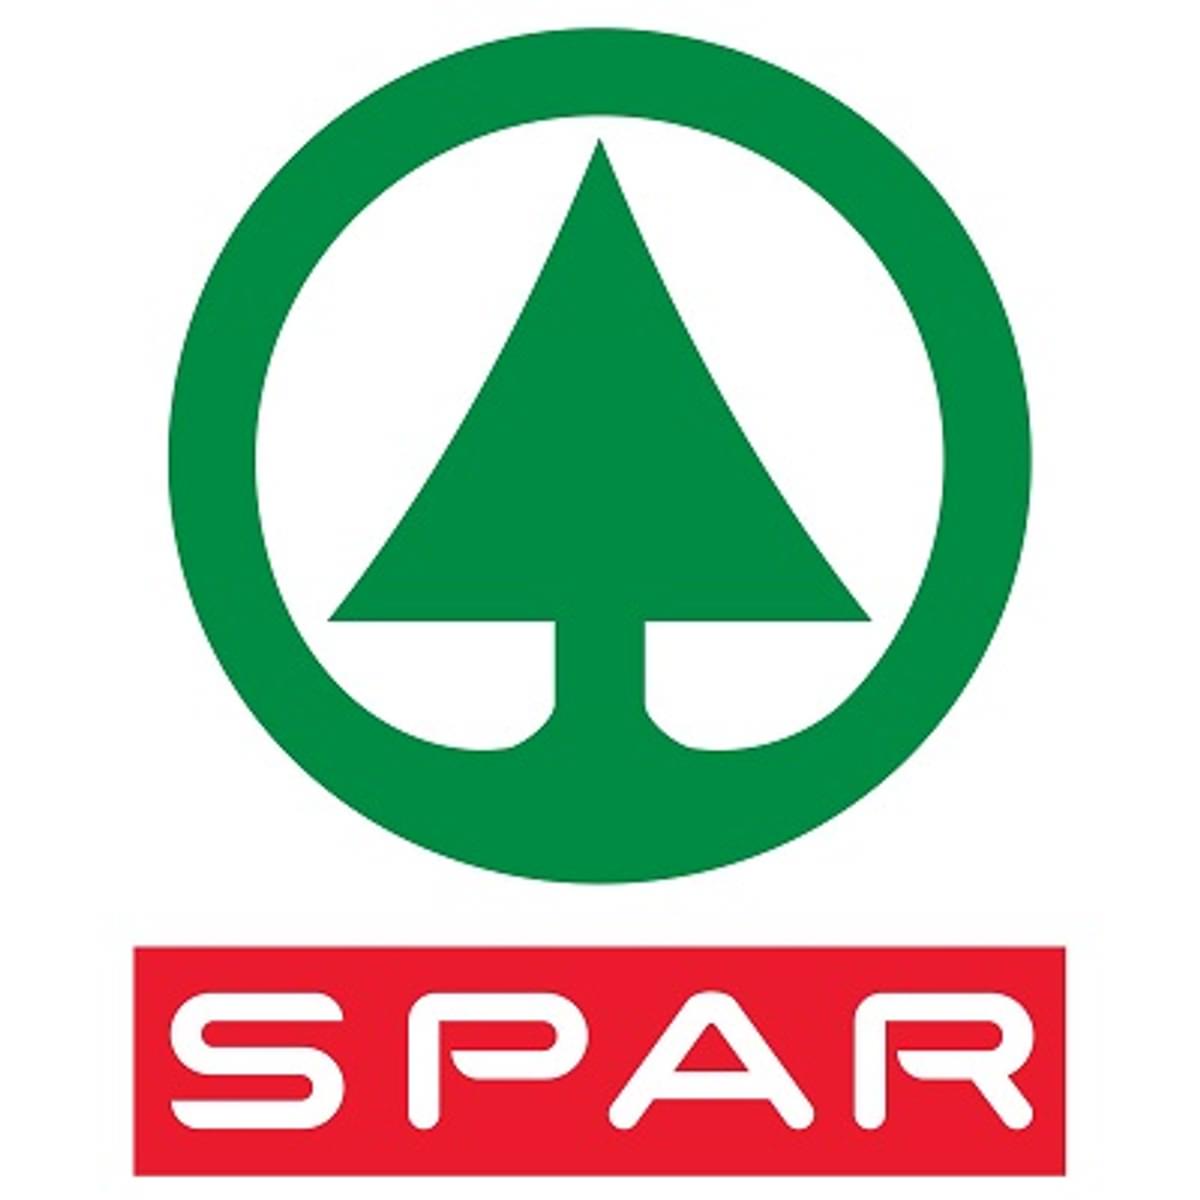 SPAR vertrouwt voor nieuw e-commerceplatform op Proserve image